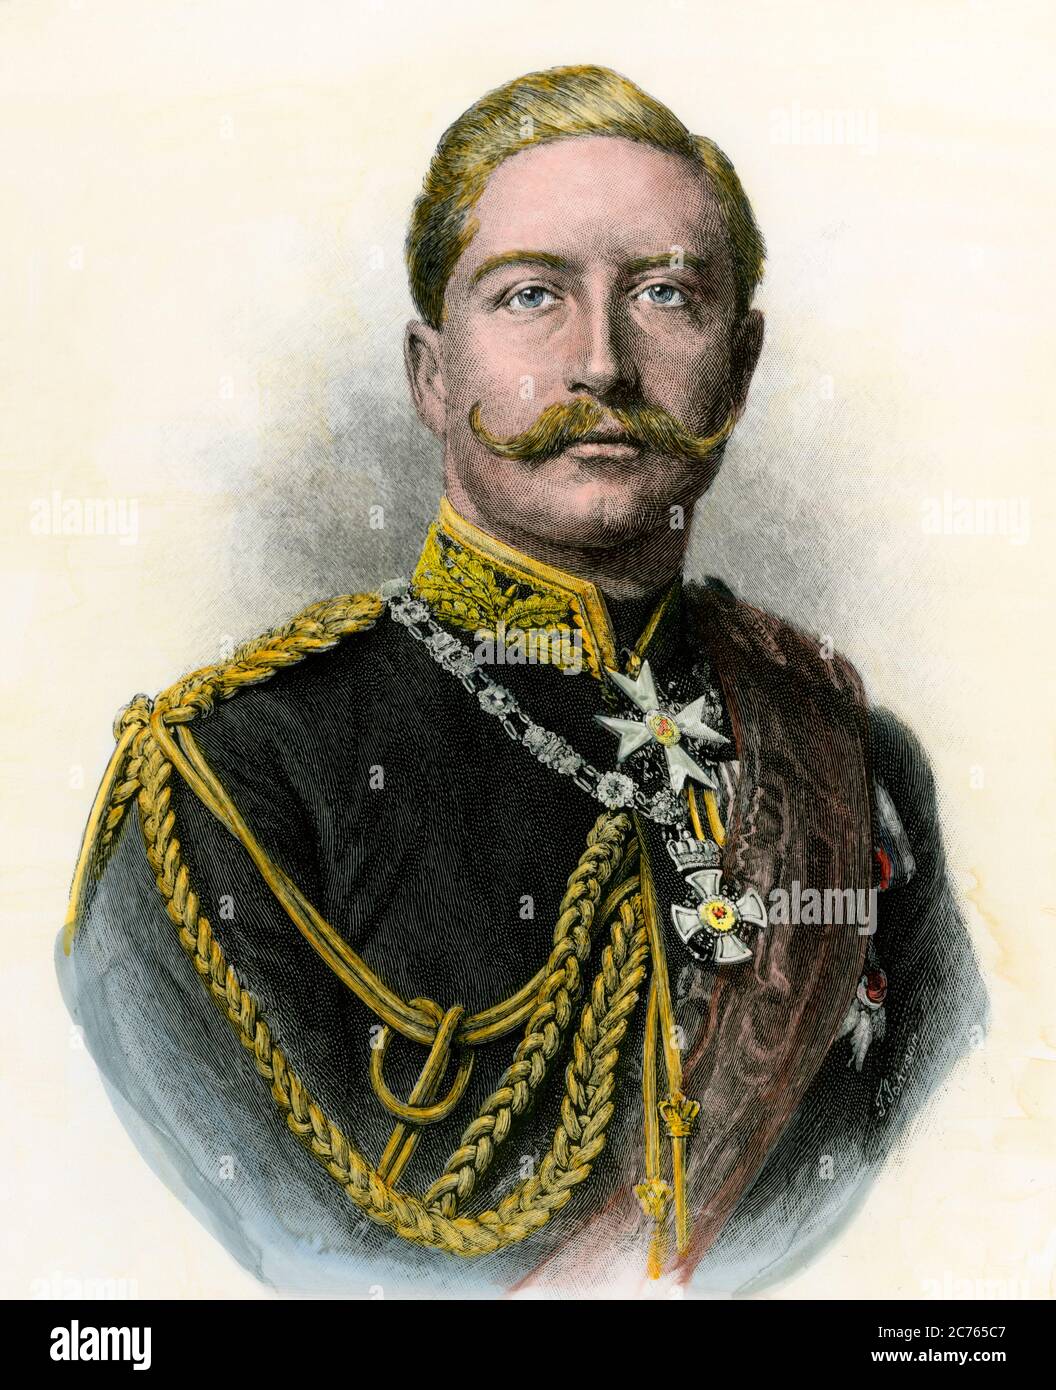 El emperador alemán Guillermo II, conocido como "el Kaiser". Madera talada a mano Foto de stock